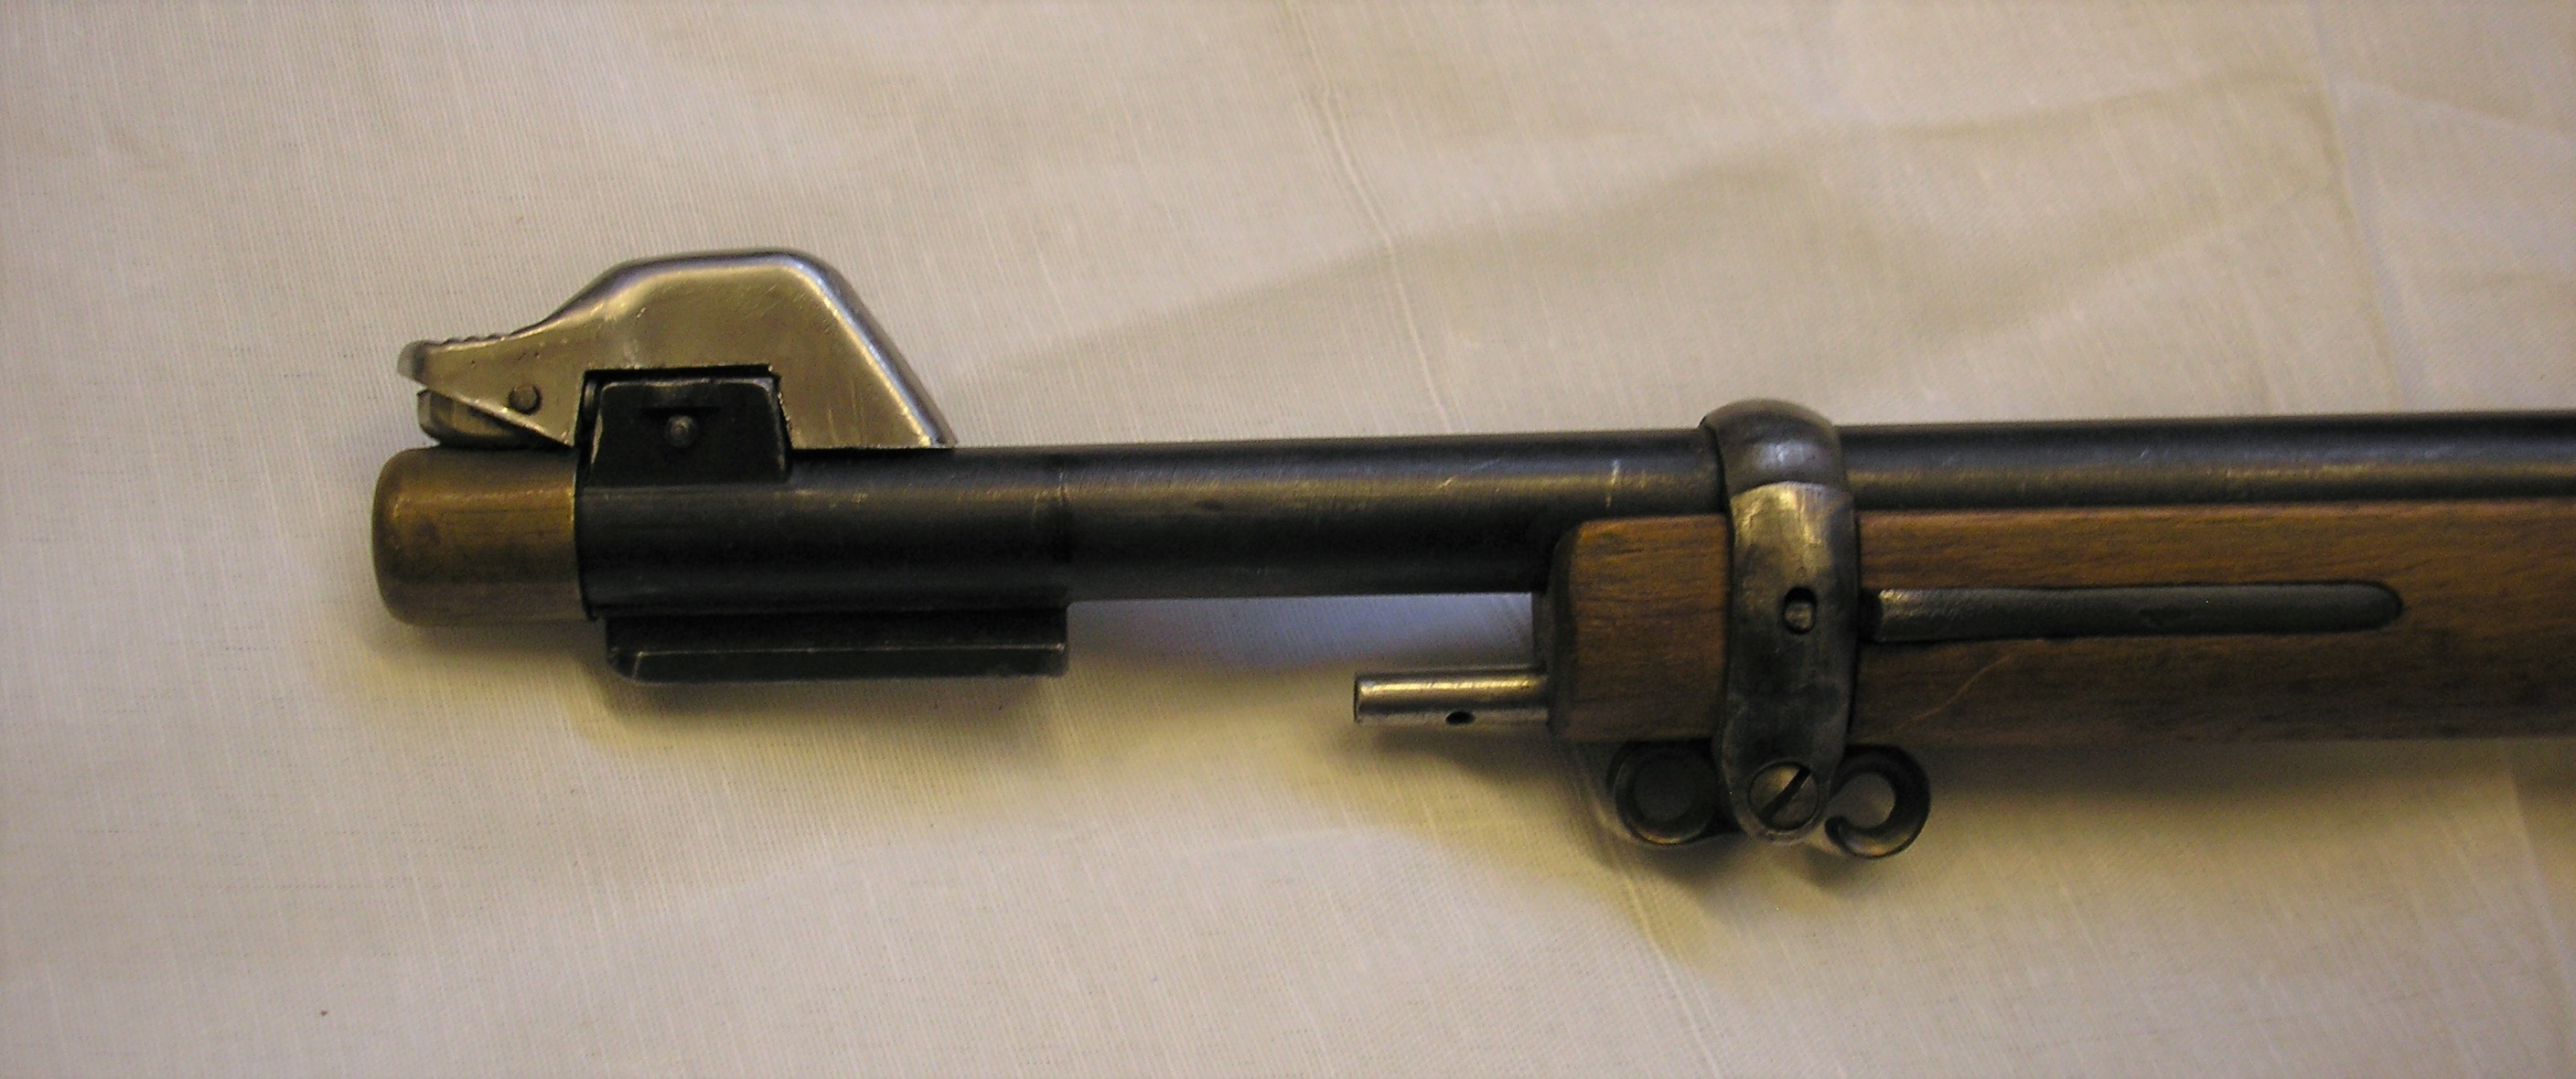 ./guns/rifle/bilder/Rifle-Kongsberg-Krag-M1894-1944-Nb090-11.JPG